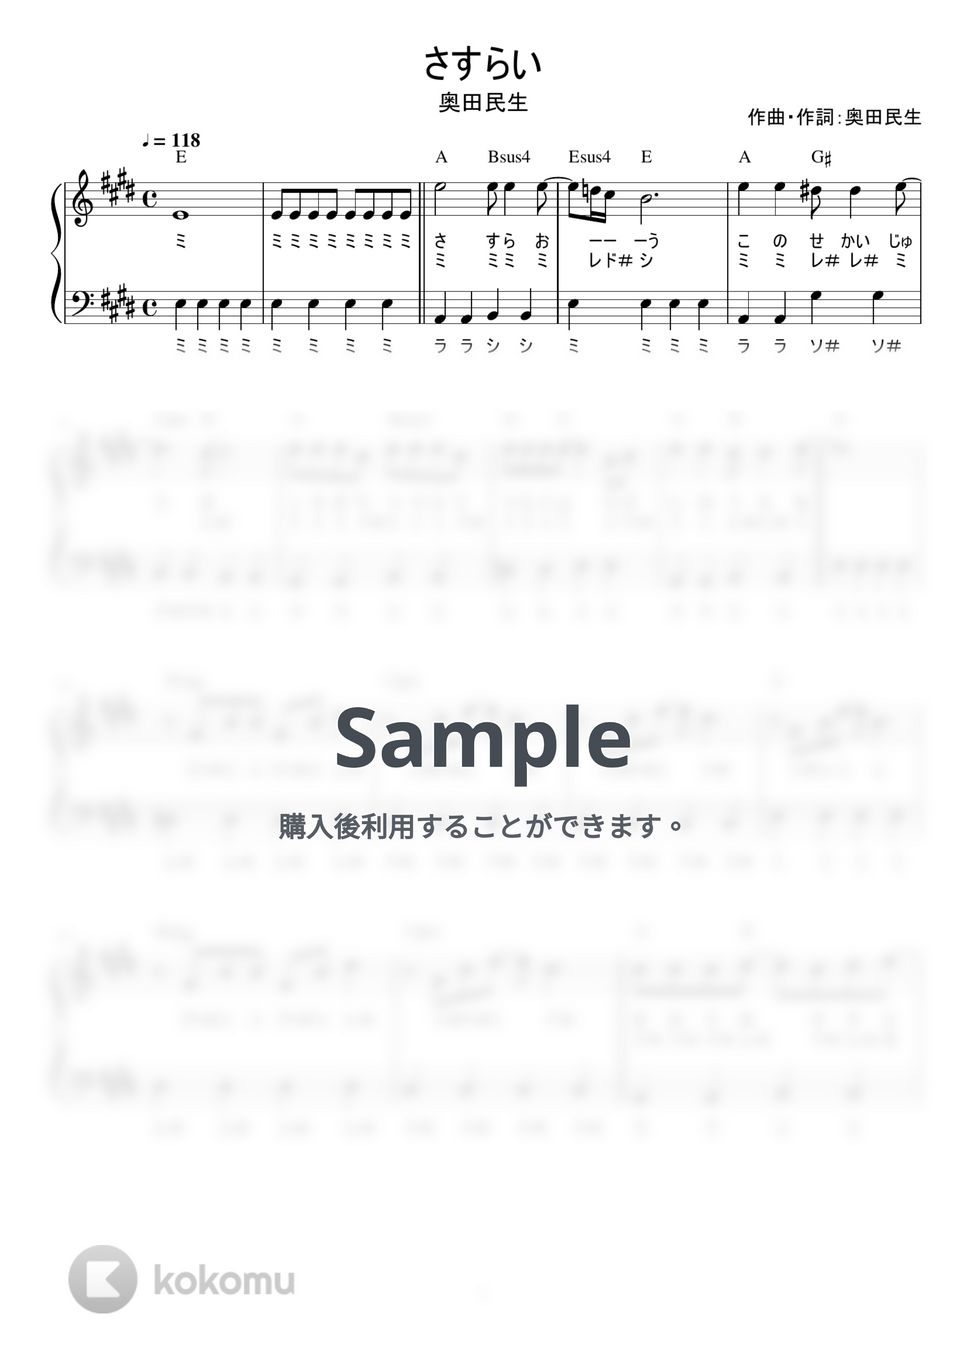 奥田民生 - さすらい (かんたん / 歌詞付き / ドレミ付き / 初心者) by piano.tokyo